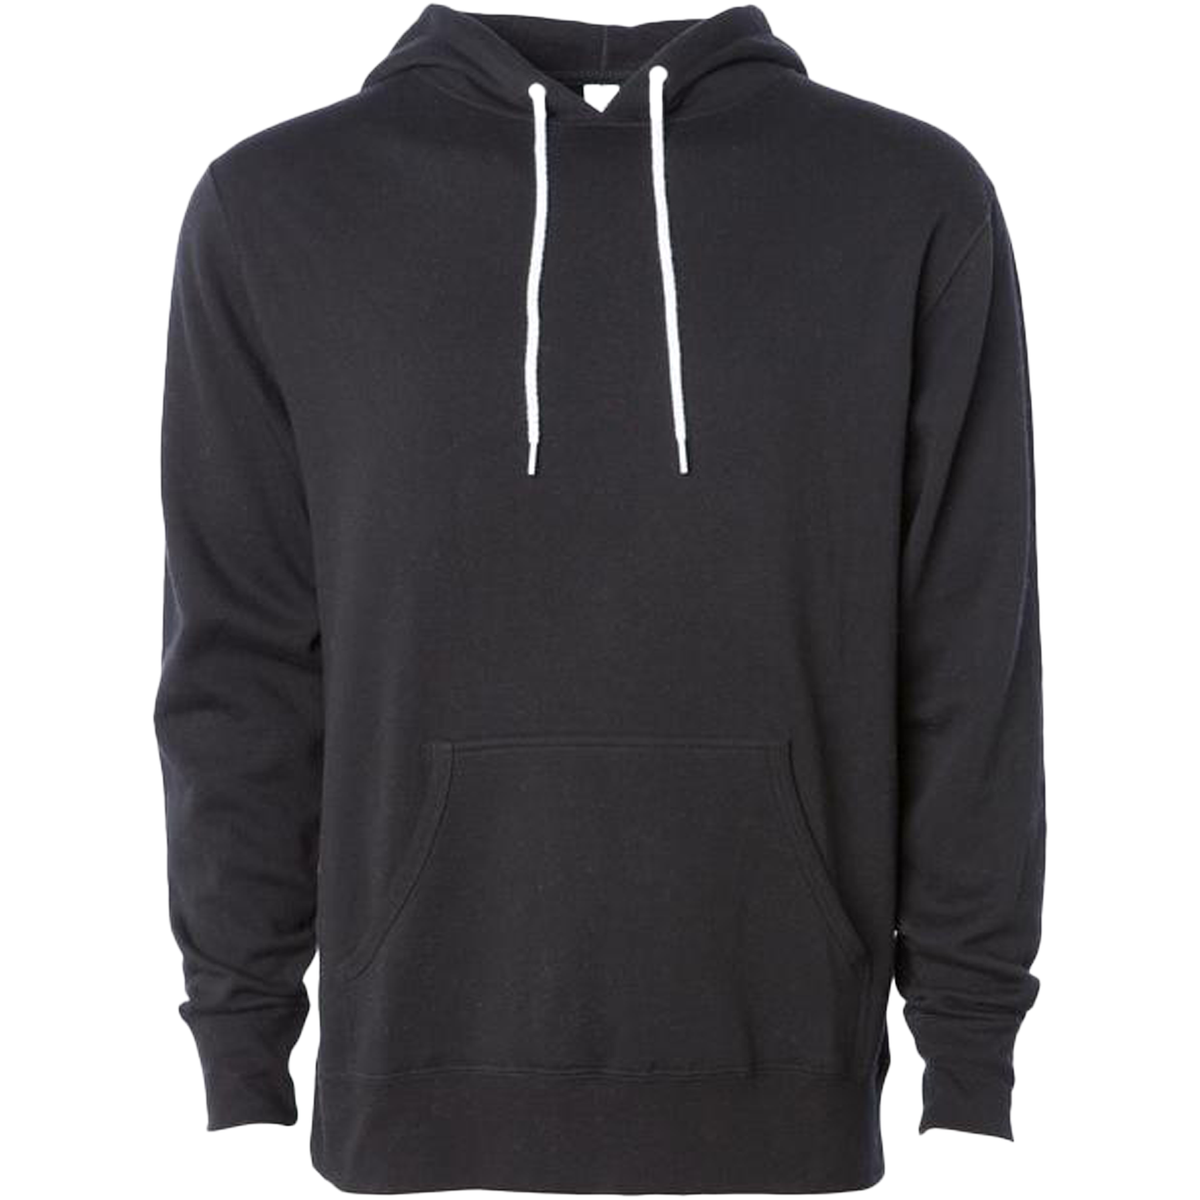 AFX90UN - Unisex Pullover Hooded Sweatshirt